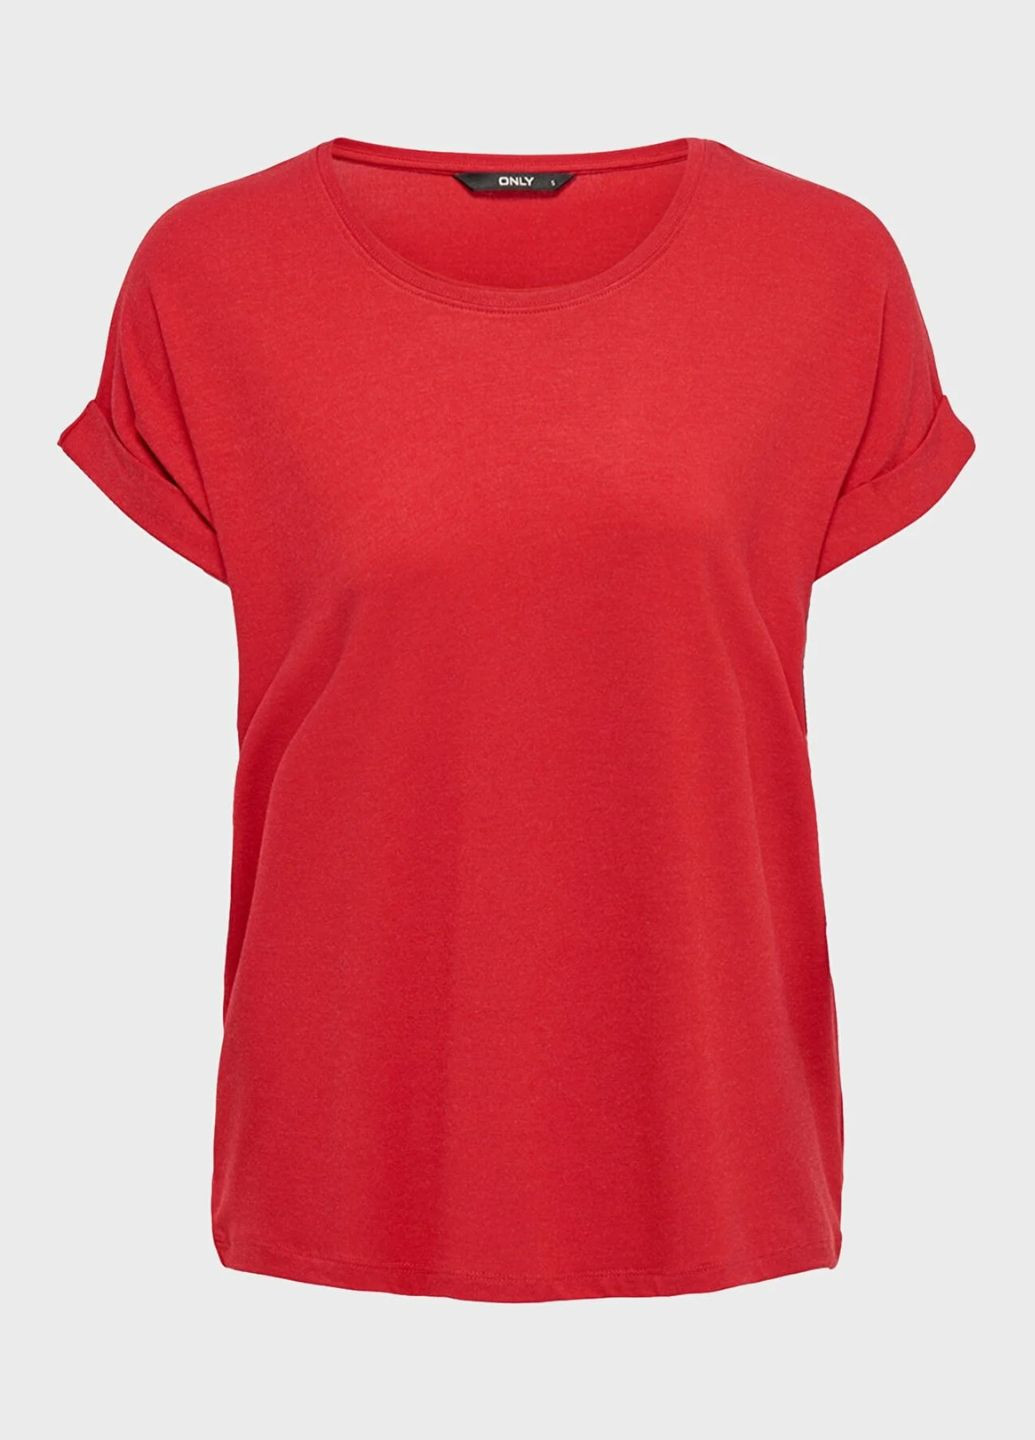 Красная футболка женская однотонная красная 11171 l (46) Only